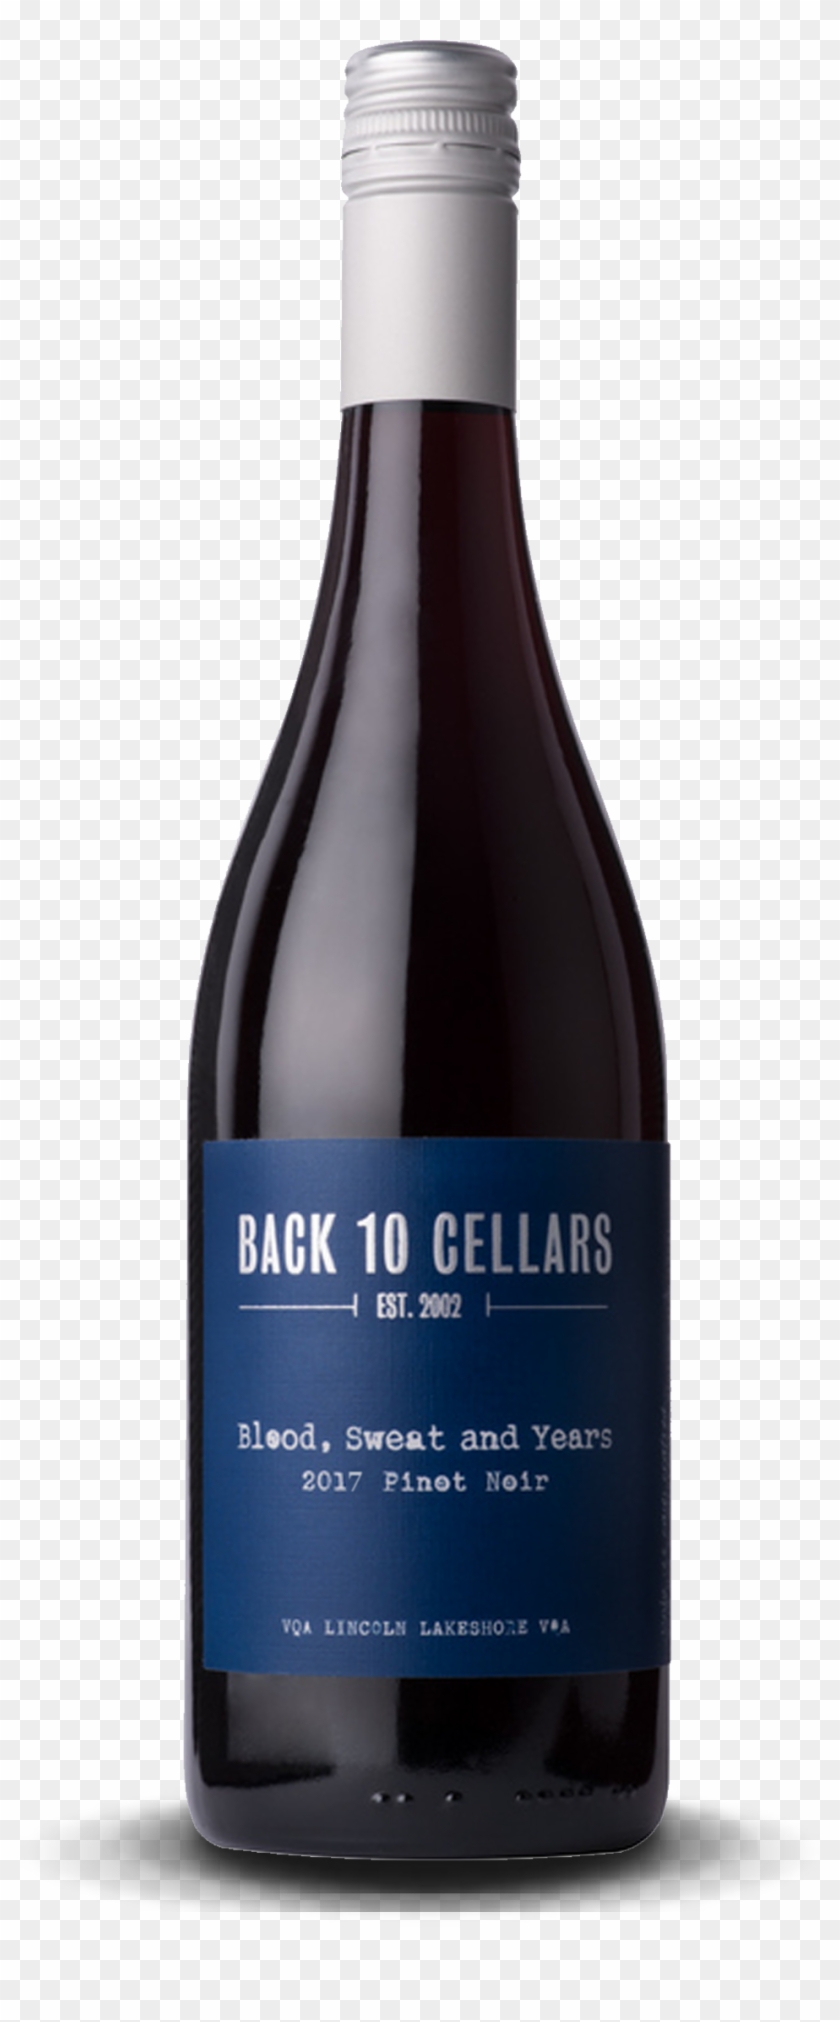 Back 10 Cellars - - Glass Bottle Clipart #3949739